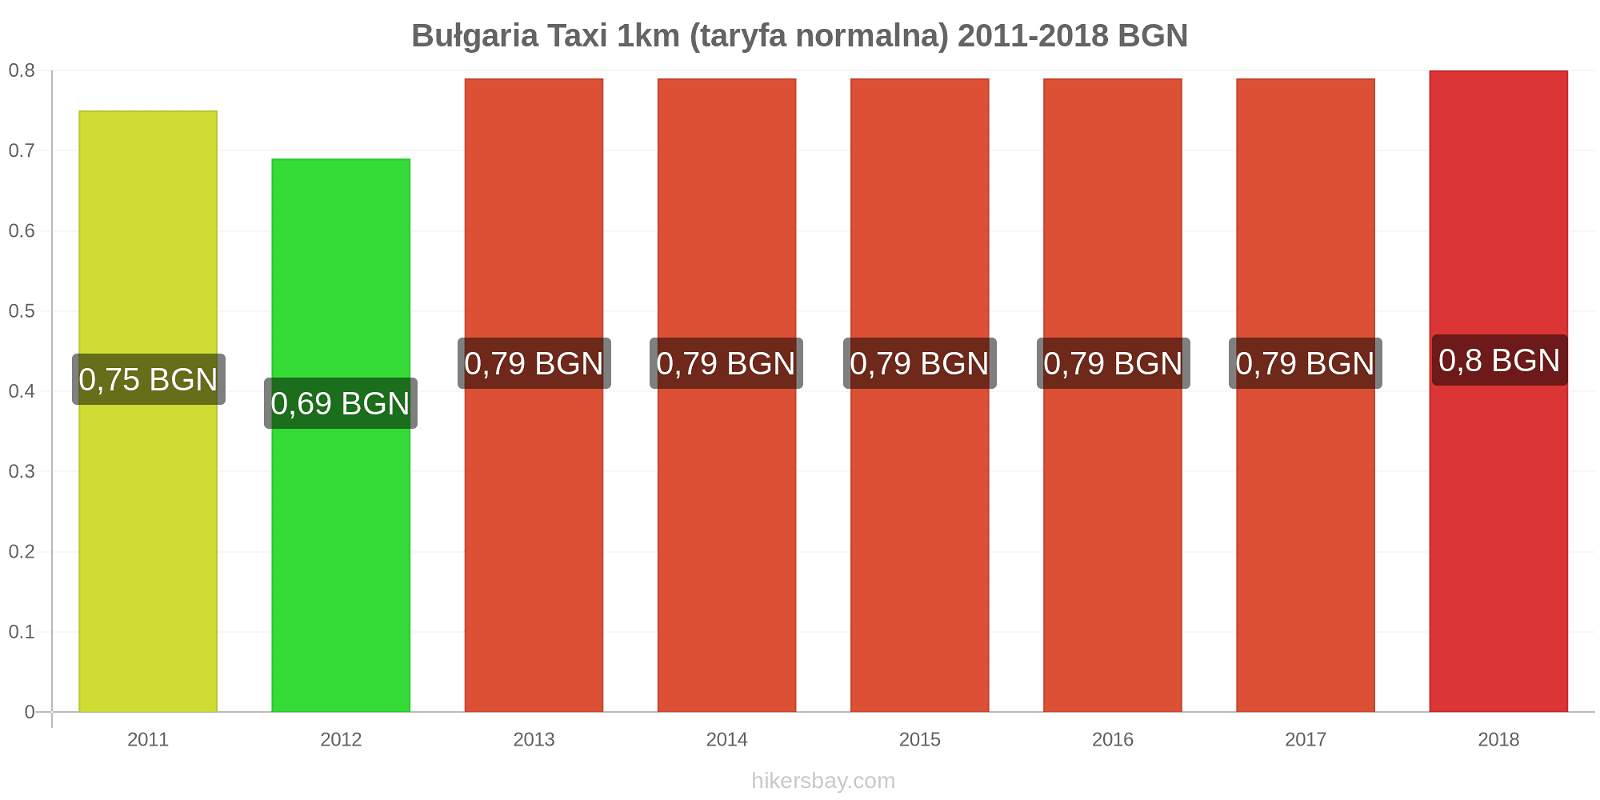 Bułgaria zmiany cen Taxi 1km (taryfa normalna) hikersbay.com